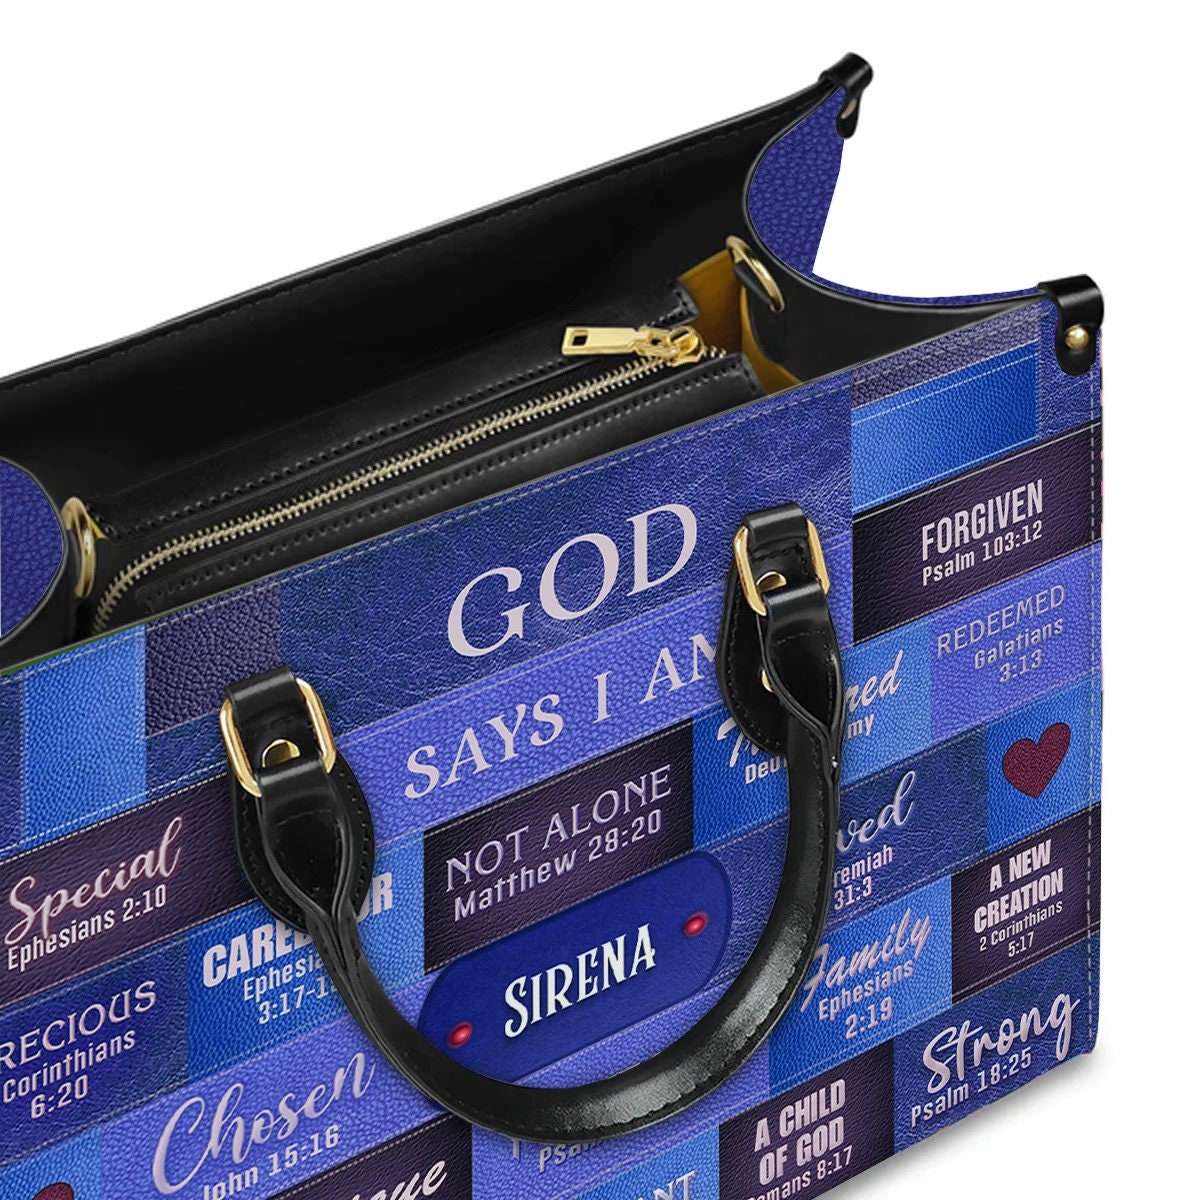 Customizable Luxury Leather Handbag - GOD Says I Am Blue Leather Handbag.